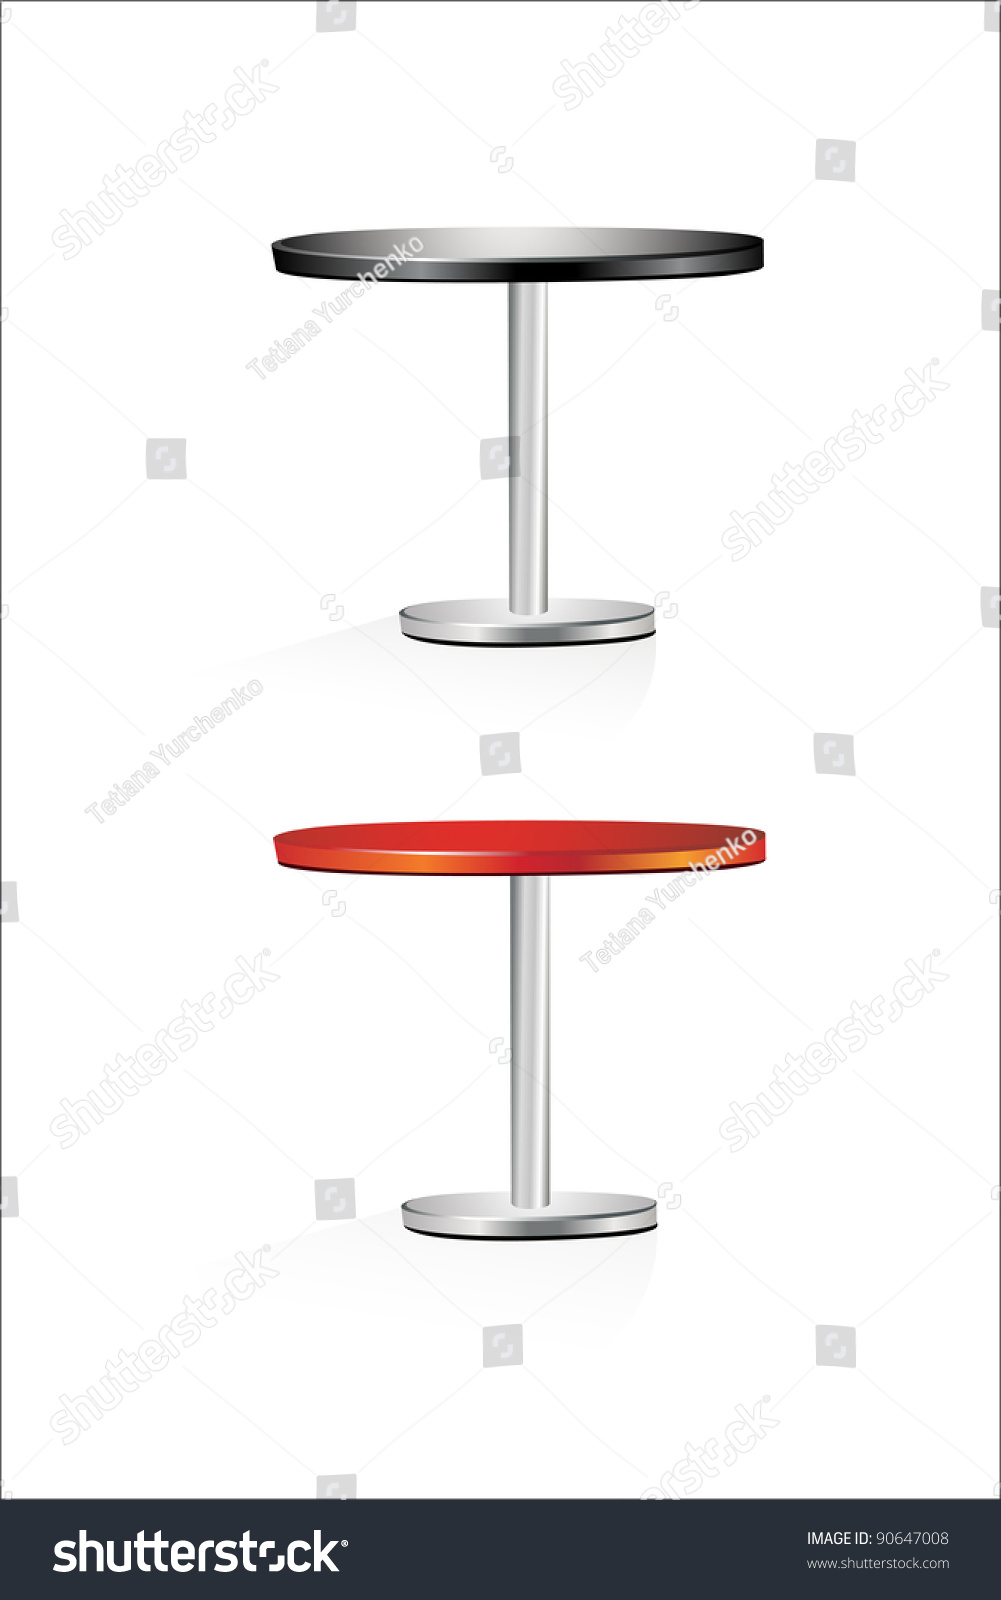 Table Stock Vector 90647008 - Shutterstock